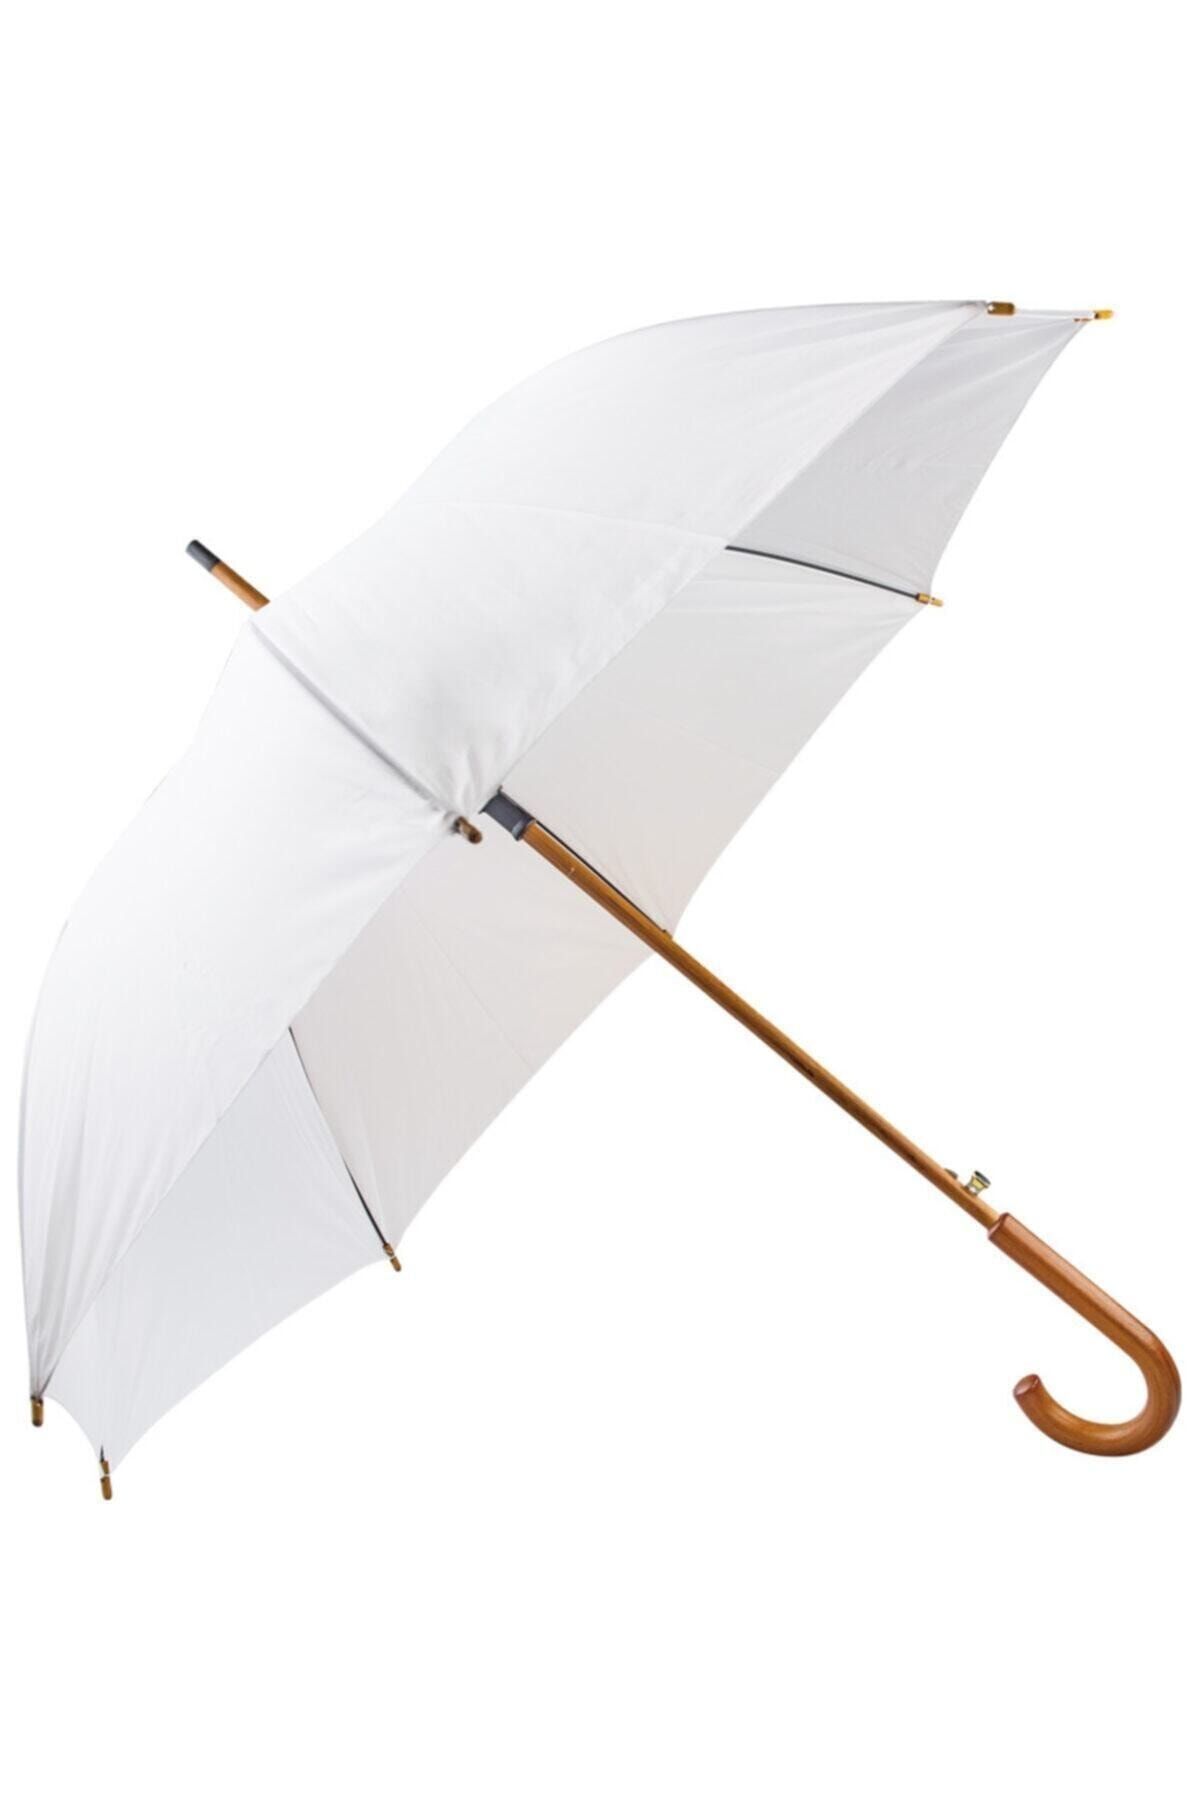 EGESTA Çift Kat, Fiber Glass Mekanizmalı, Renkli Ahşap Saplı Baston Şemsiye - Beyaz